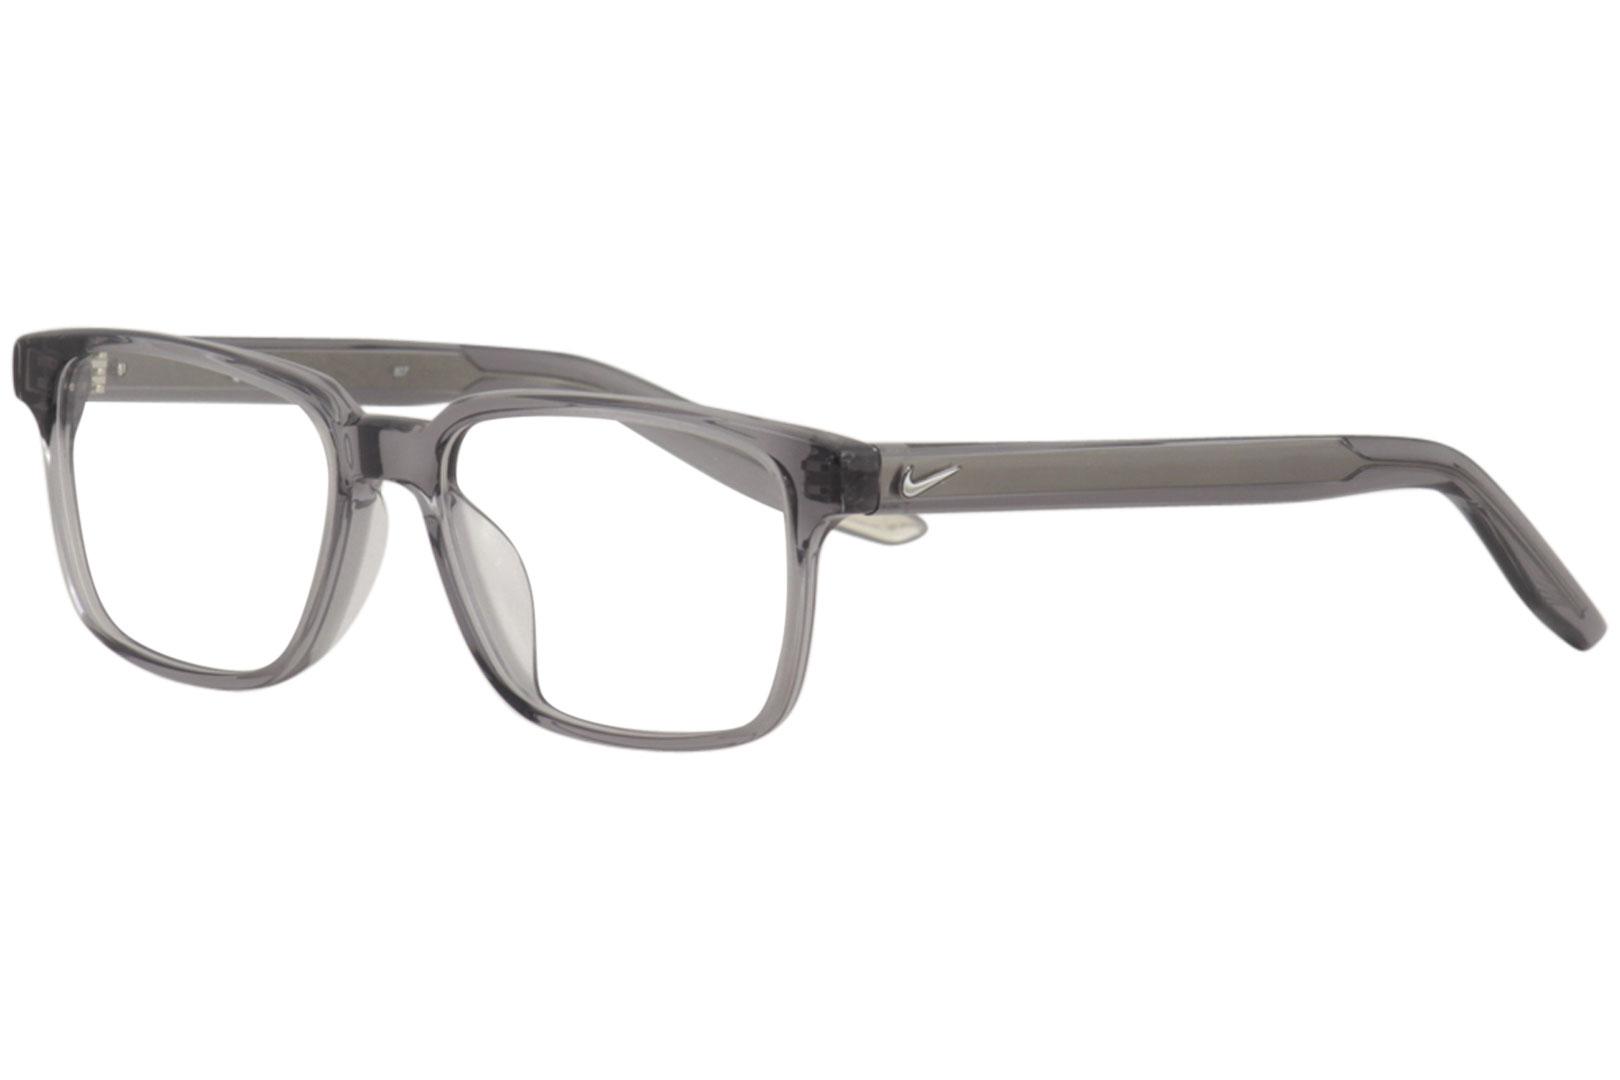 Nike Men's Eyeglasses KD74 KD/74 030 Dark Grey Full Rim Optical Frame 52mm - image 1 of 5